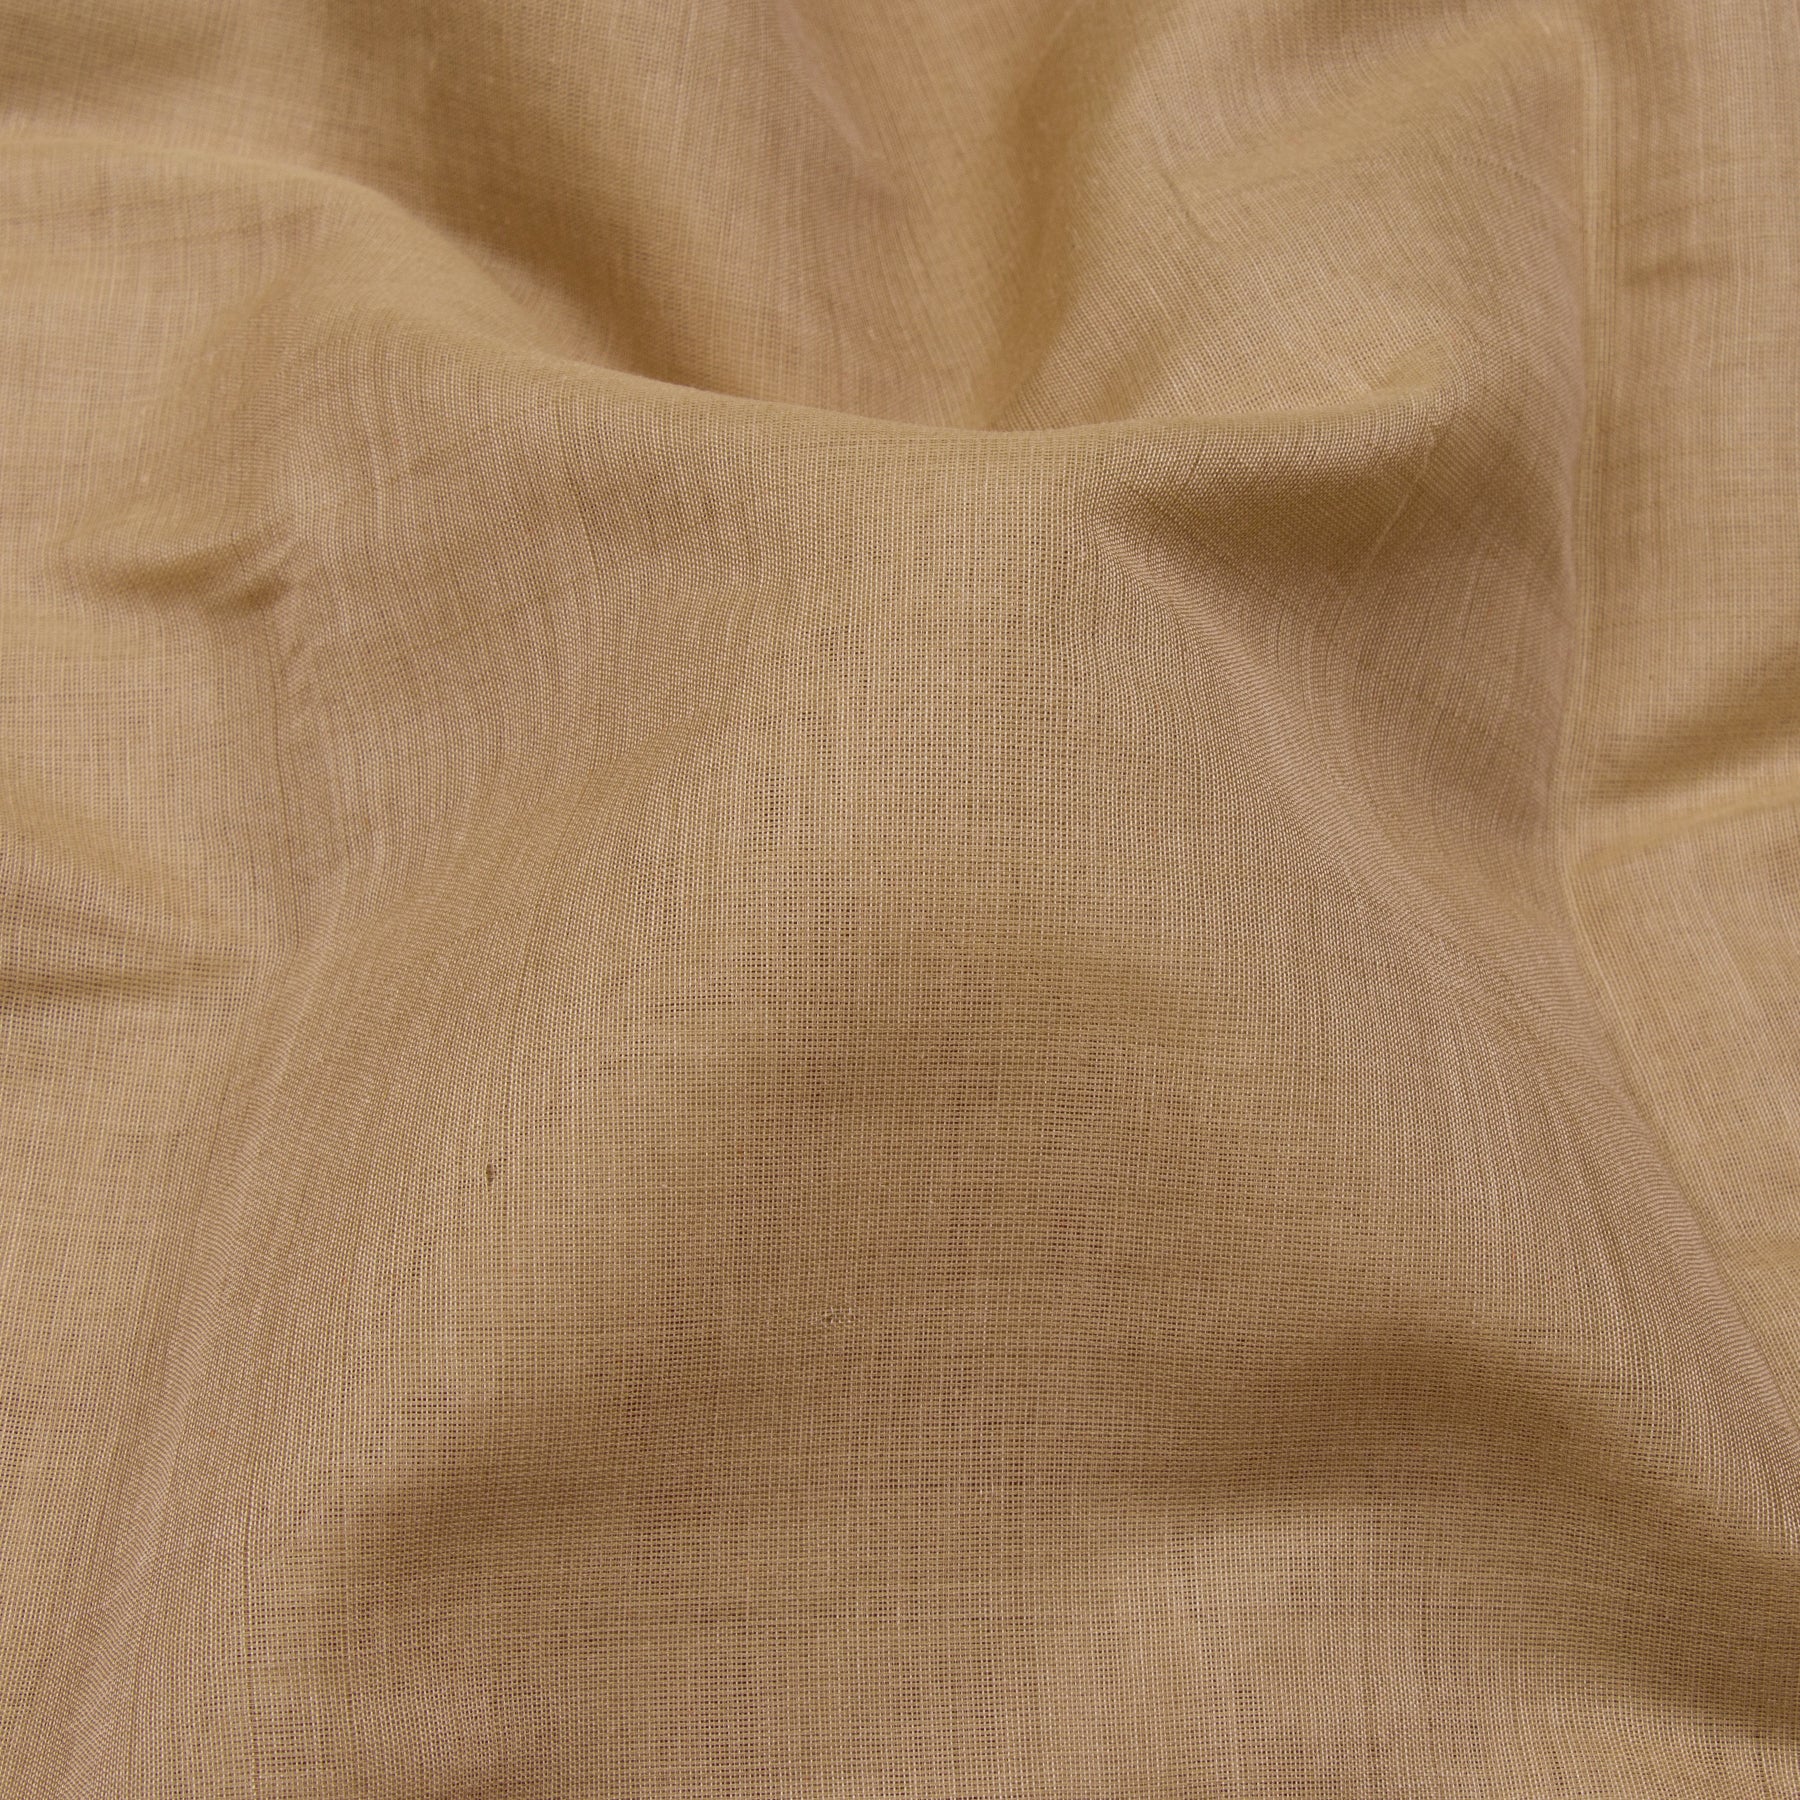 Kanakavalli Gadwal Silk/Cotton Sari 23-604-HS005-13404 - Fabric View